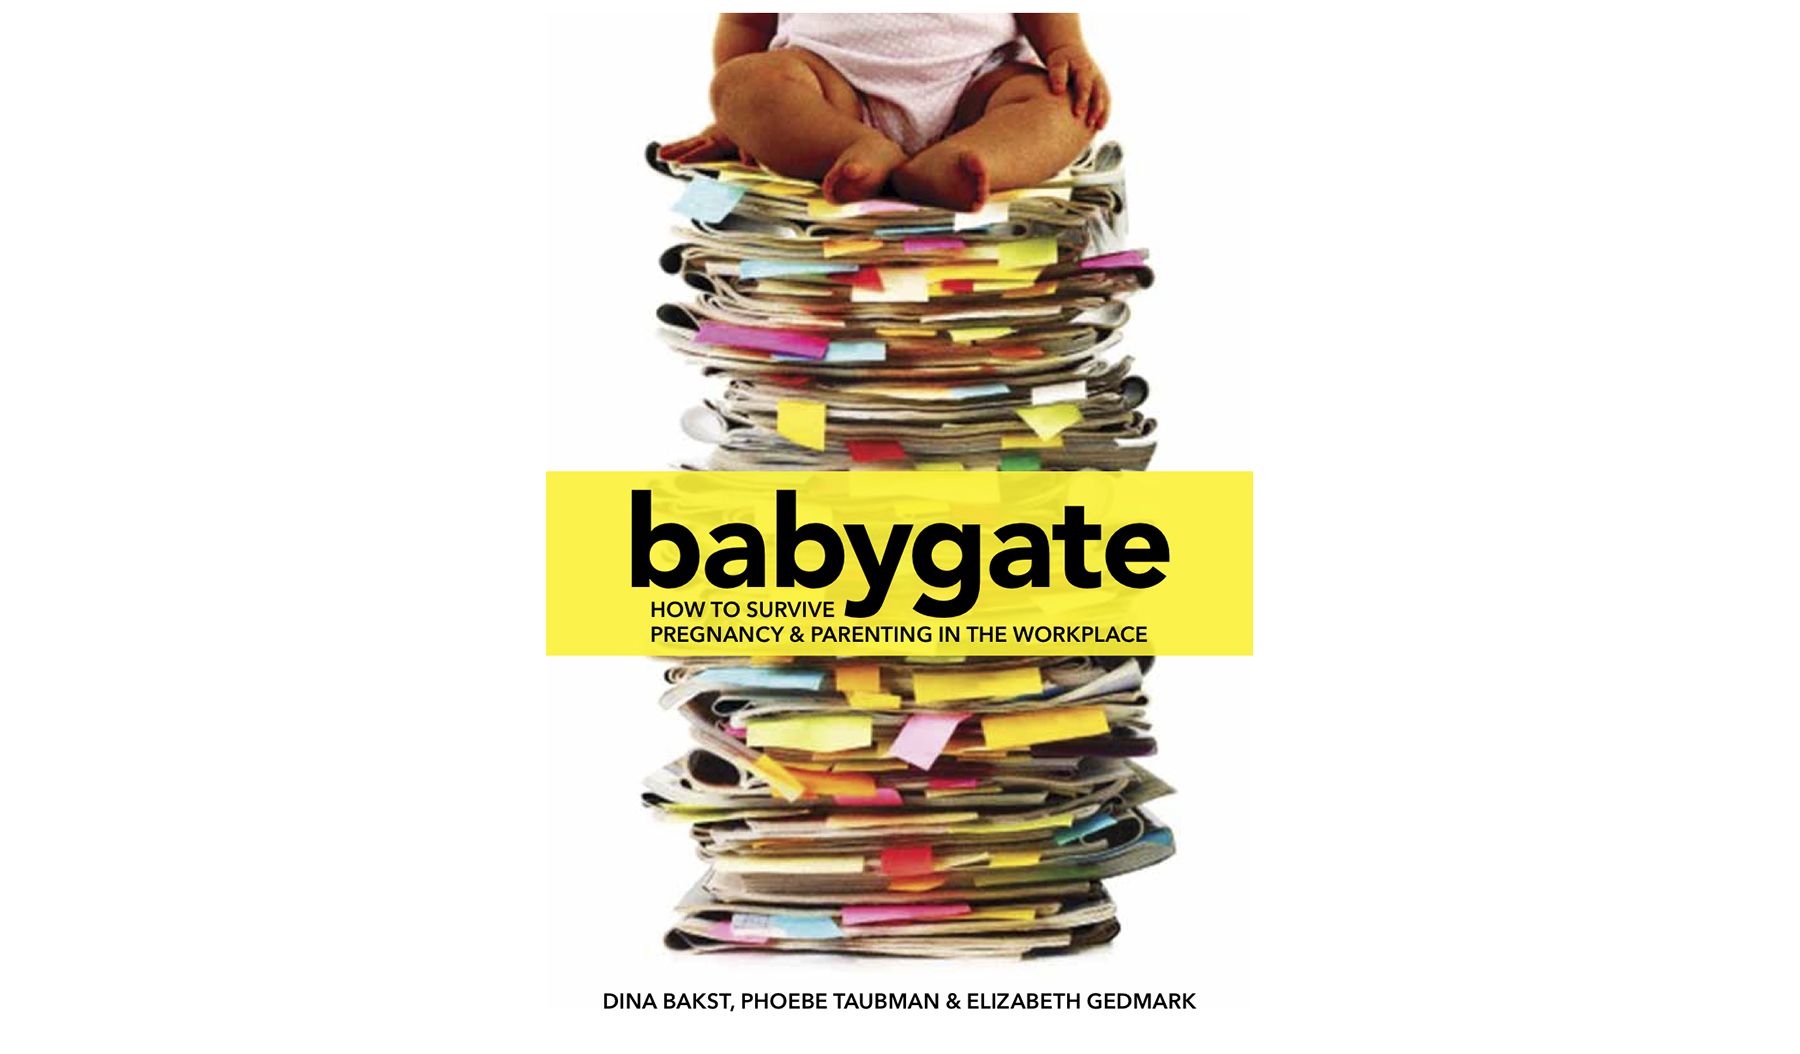 Babina: Dina Bakst, Phoebe Taubman un Elizabeth Gedmark, kā izdzīvot grūtniecību un vecāku darbu darbavietā